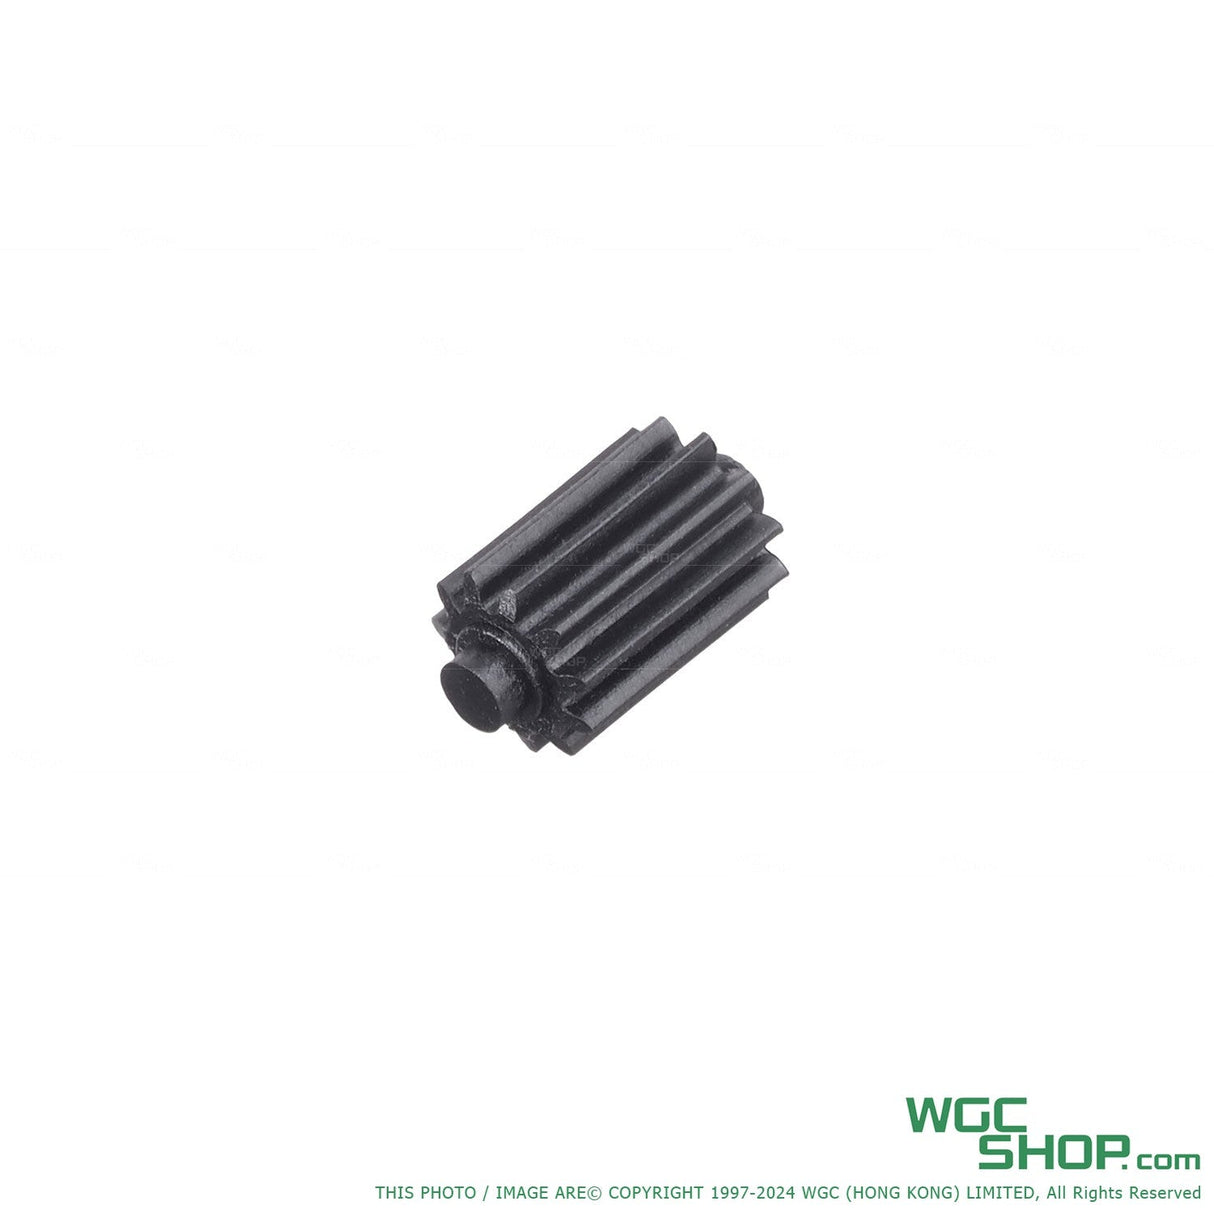 VFC Original Parts - MK25 GBB Hop Dial Outer ( VGCJHOP040 / 02-06 )